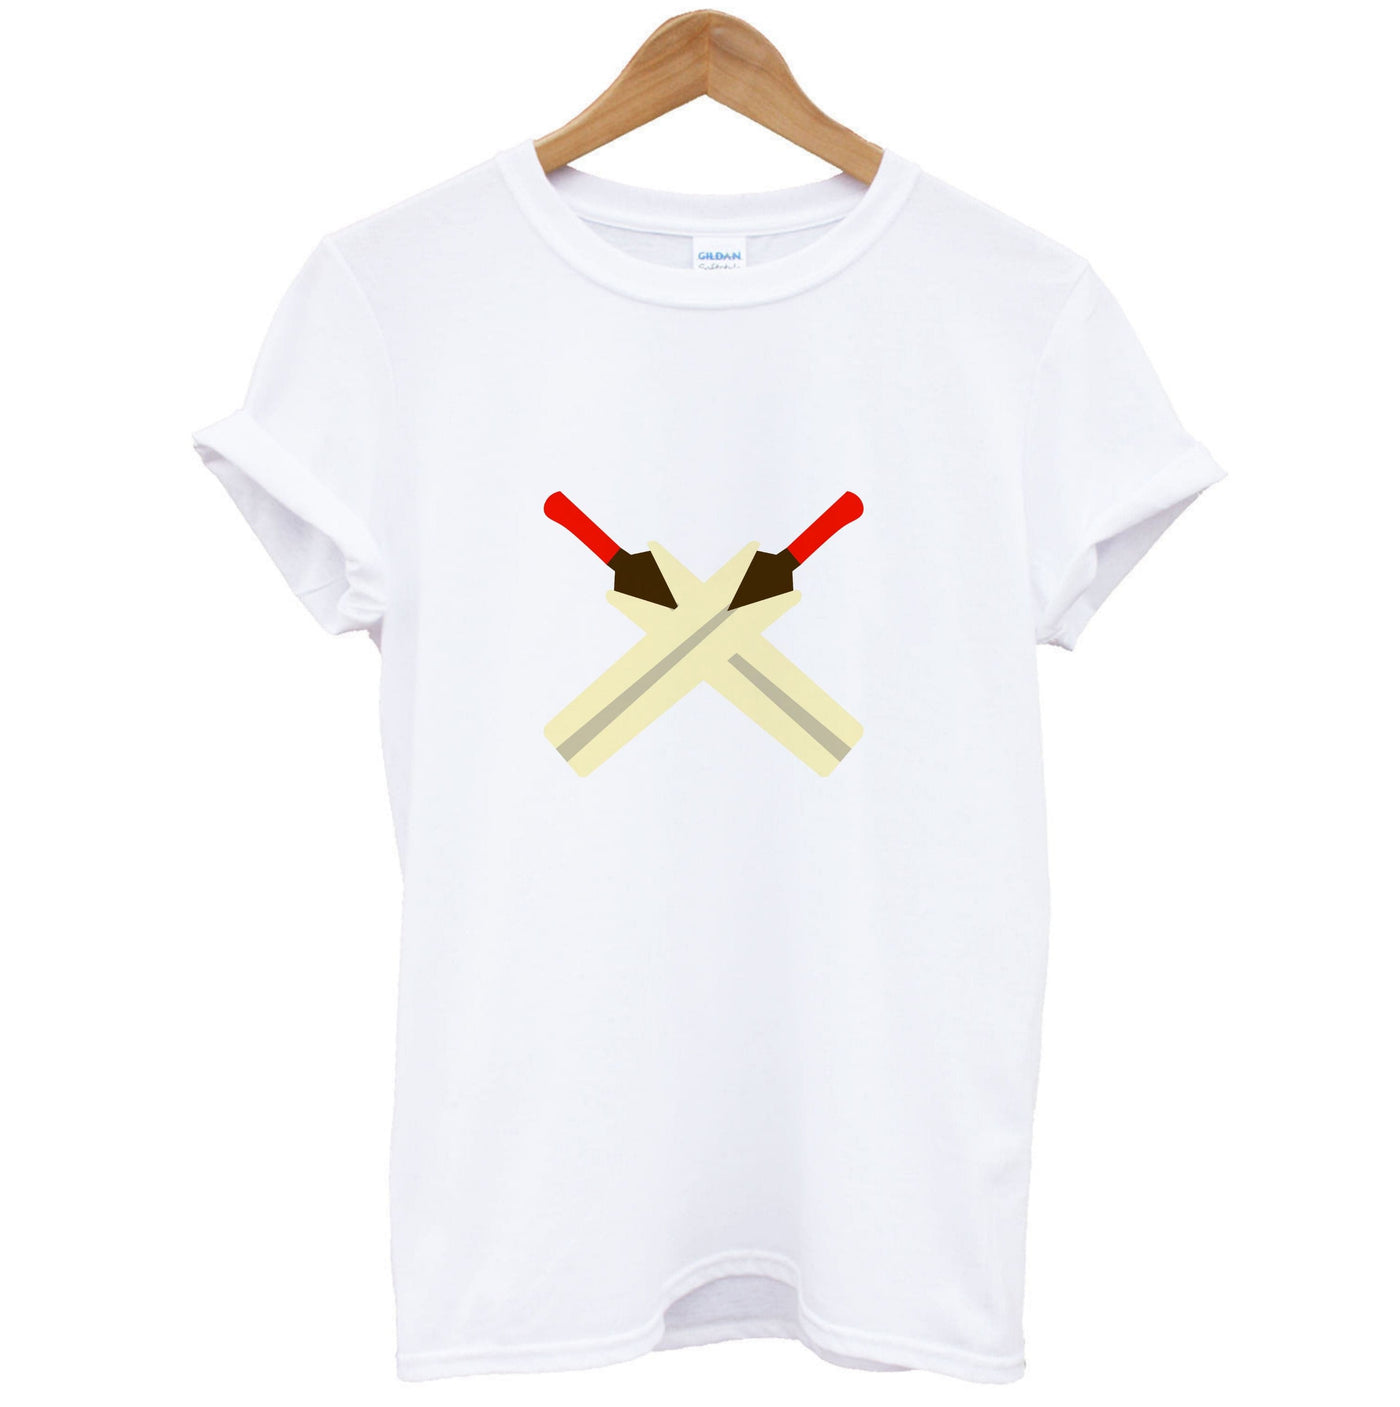 The Bats - Cricket T-Shirt